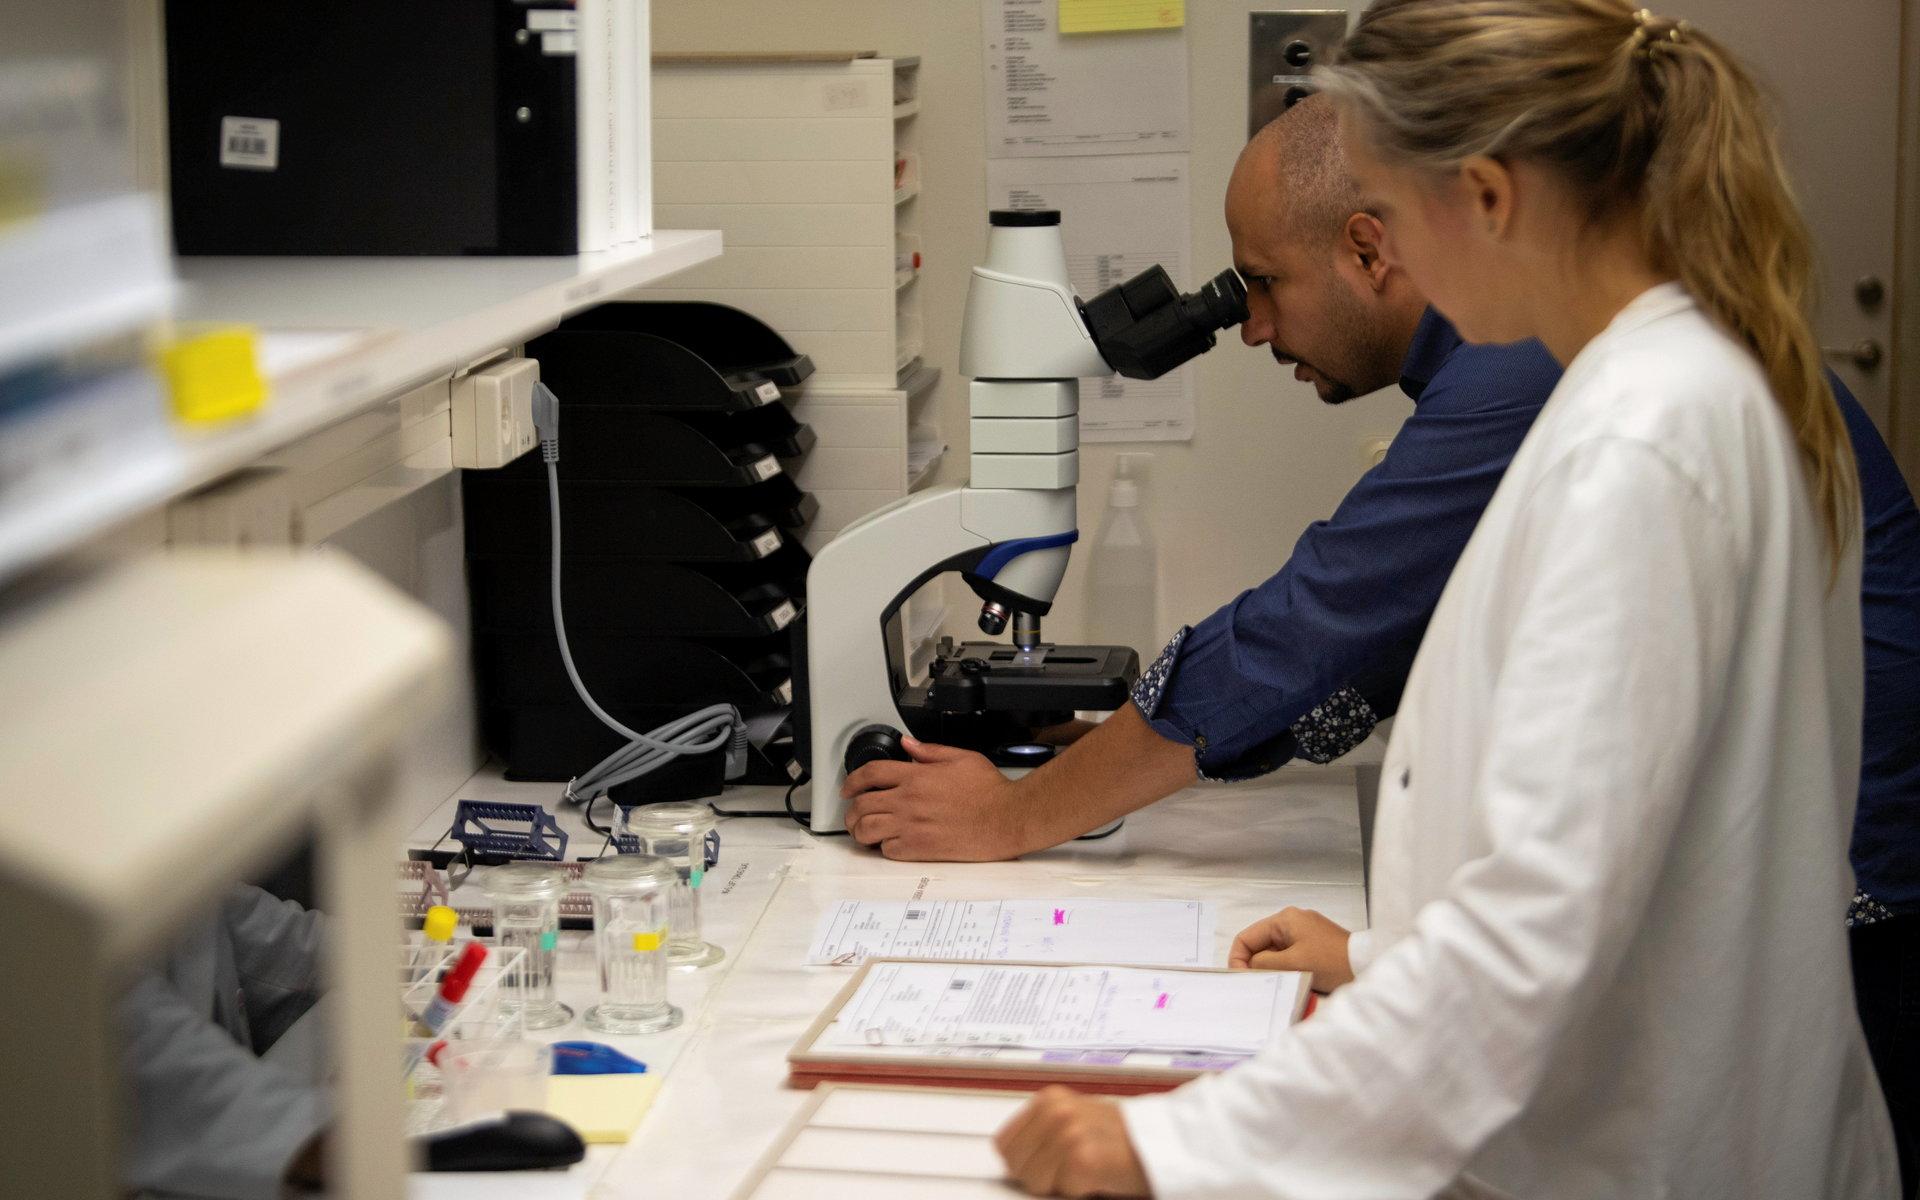 Mohammed Mansour och Karolina Torstensson studerar cellprov. Utöver patologer har cytodiagnostiker även befogenhet att ställa vissa diagnoser genom cellprov.